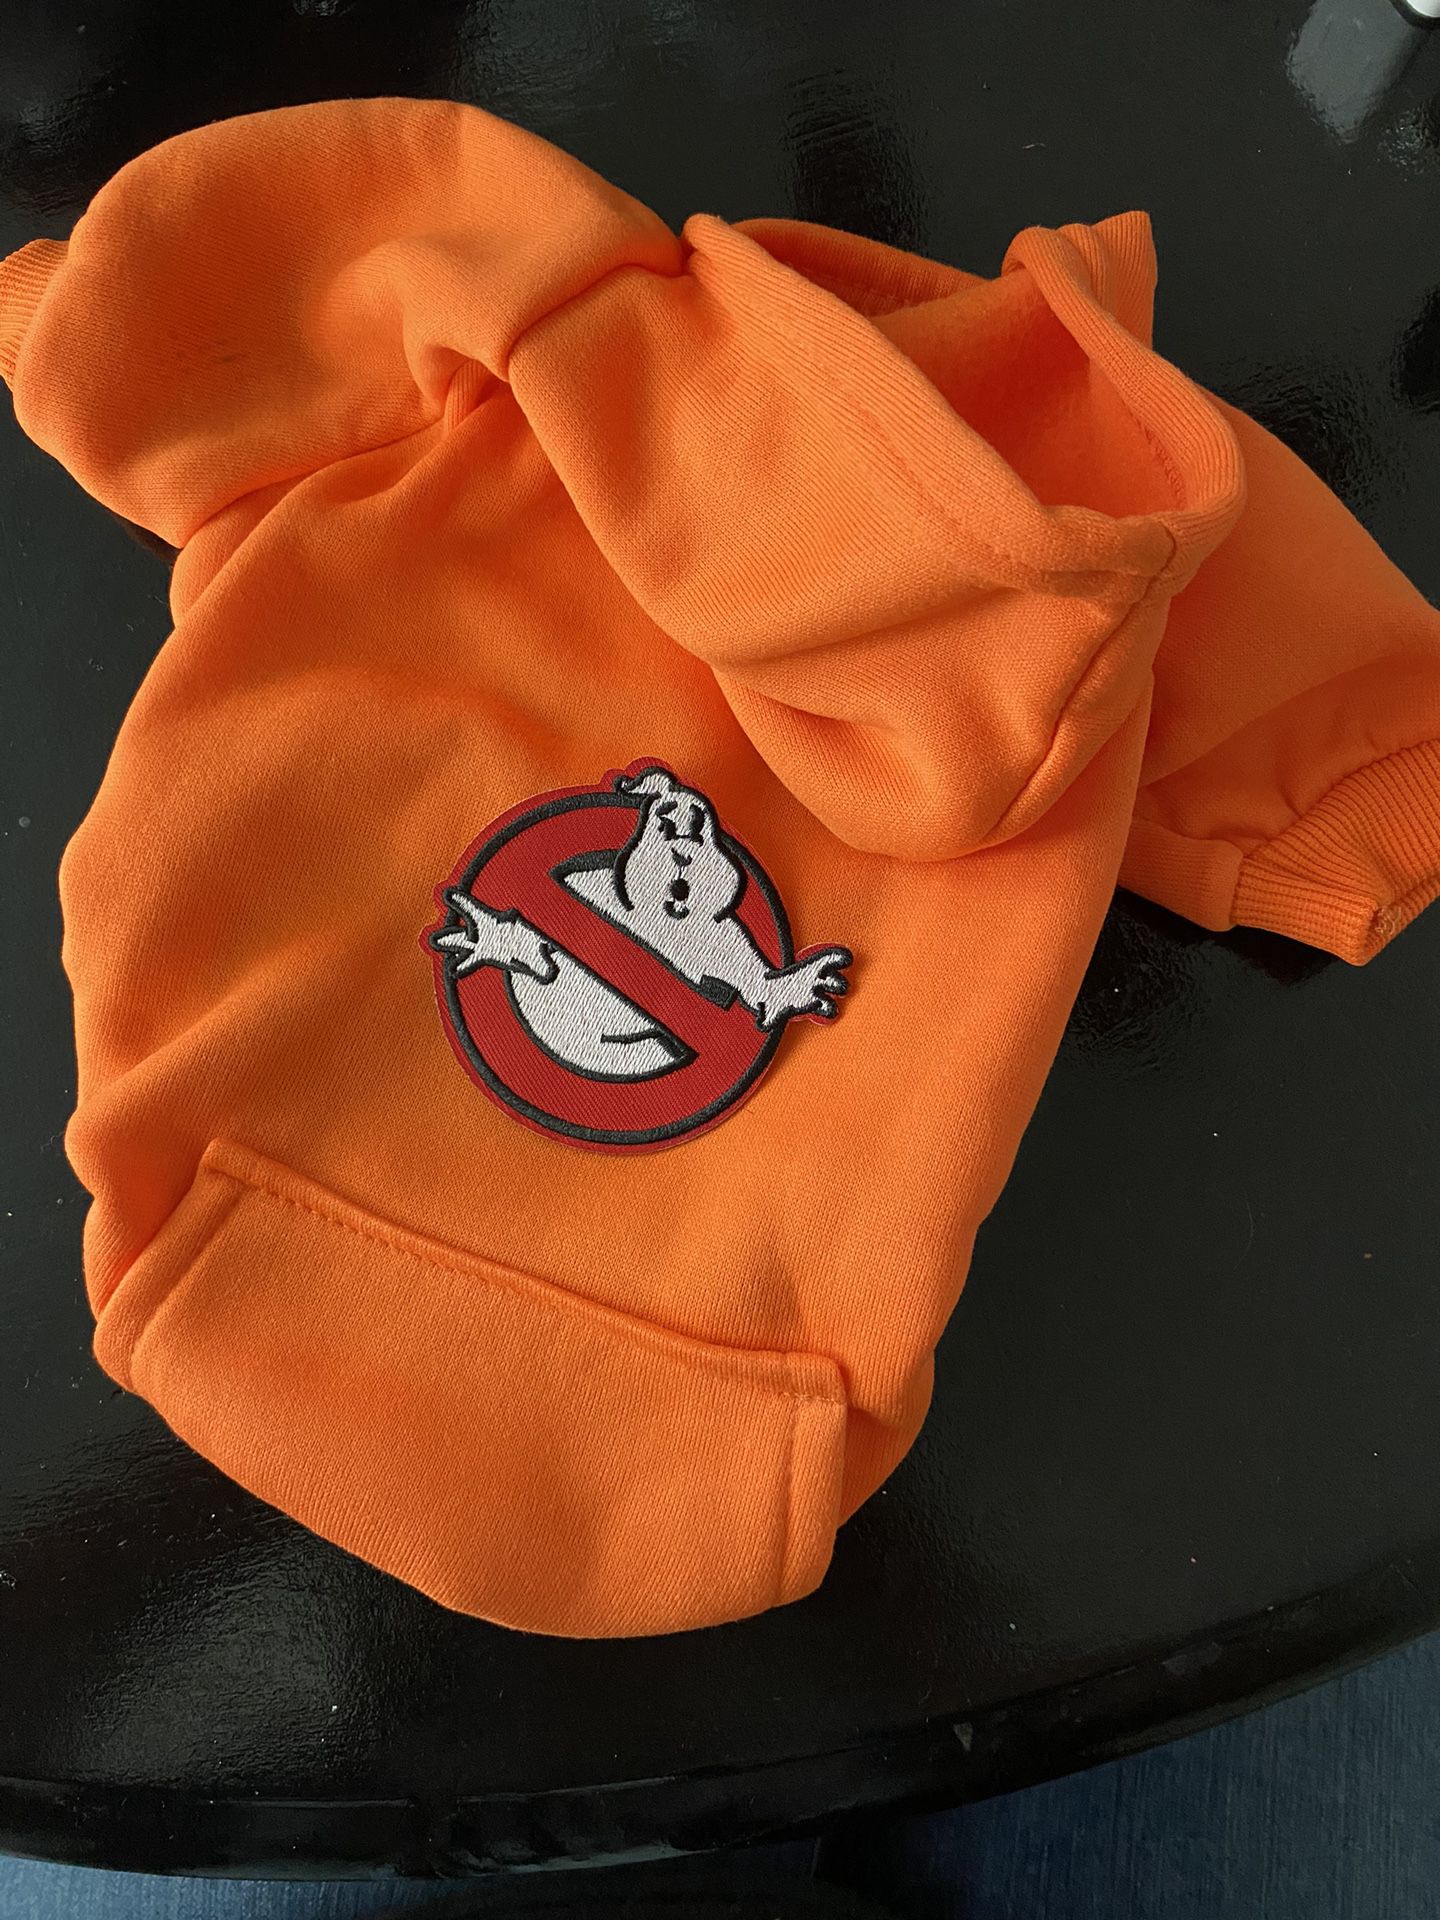 Ghostbusters Orange Sweatshirt Top Dog Cat Hooded Hoodie Large M 